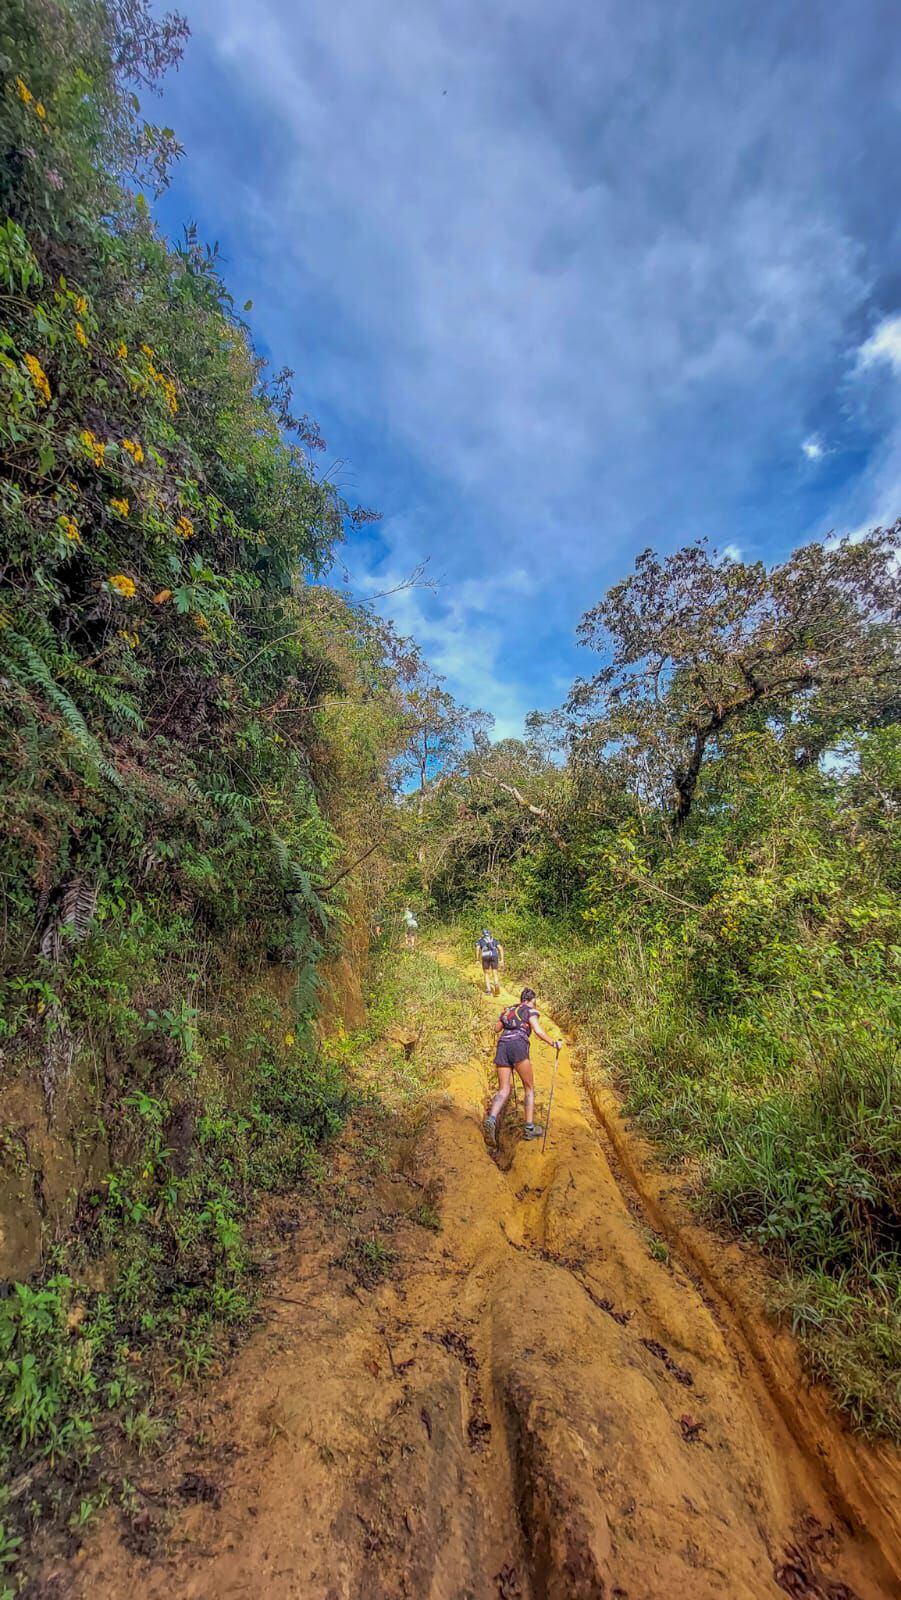 Hablemos de trail: Caminar en algunas cuestas puede ayudar a regularizar nuestra pulsaciones. Foto: Luis Diego Leiva